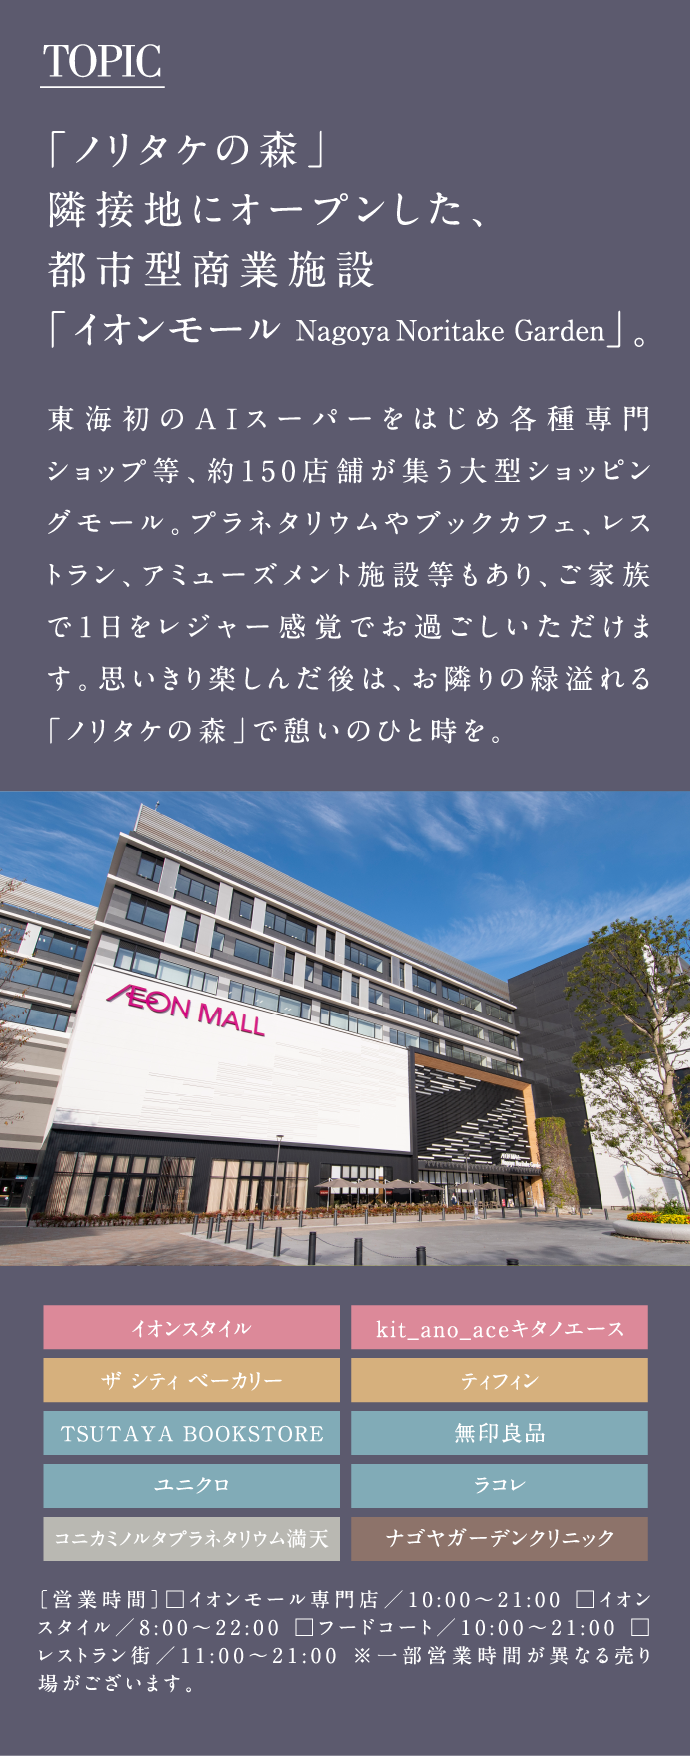 TOPIC「ノリタケの森」隣接地にオープンした、都市型商業施設「イオンモール Nagoya Noritake Garden」。